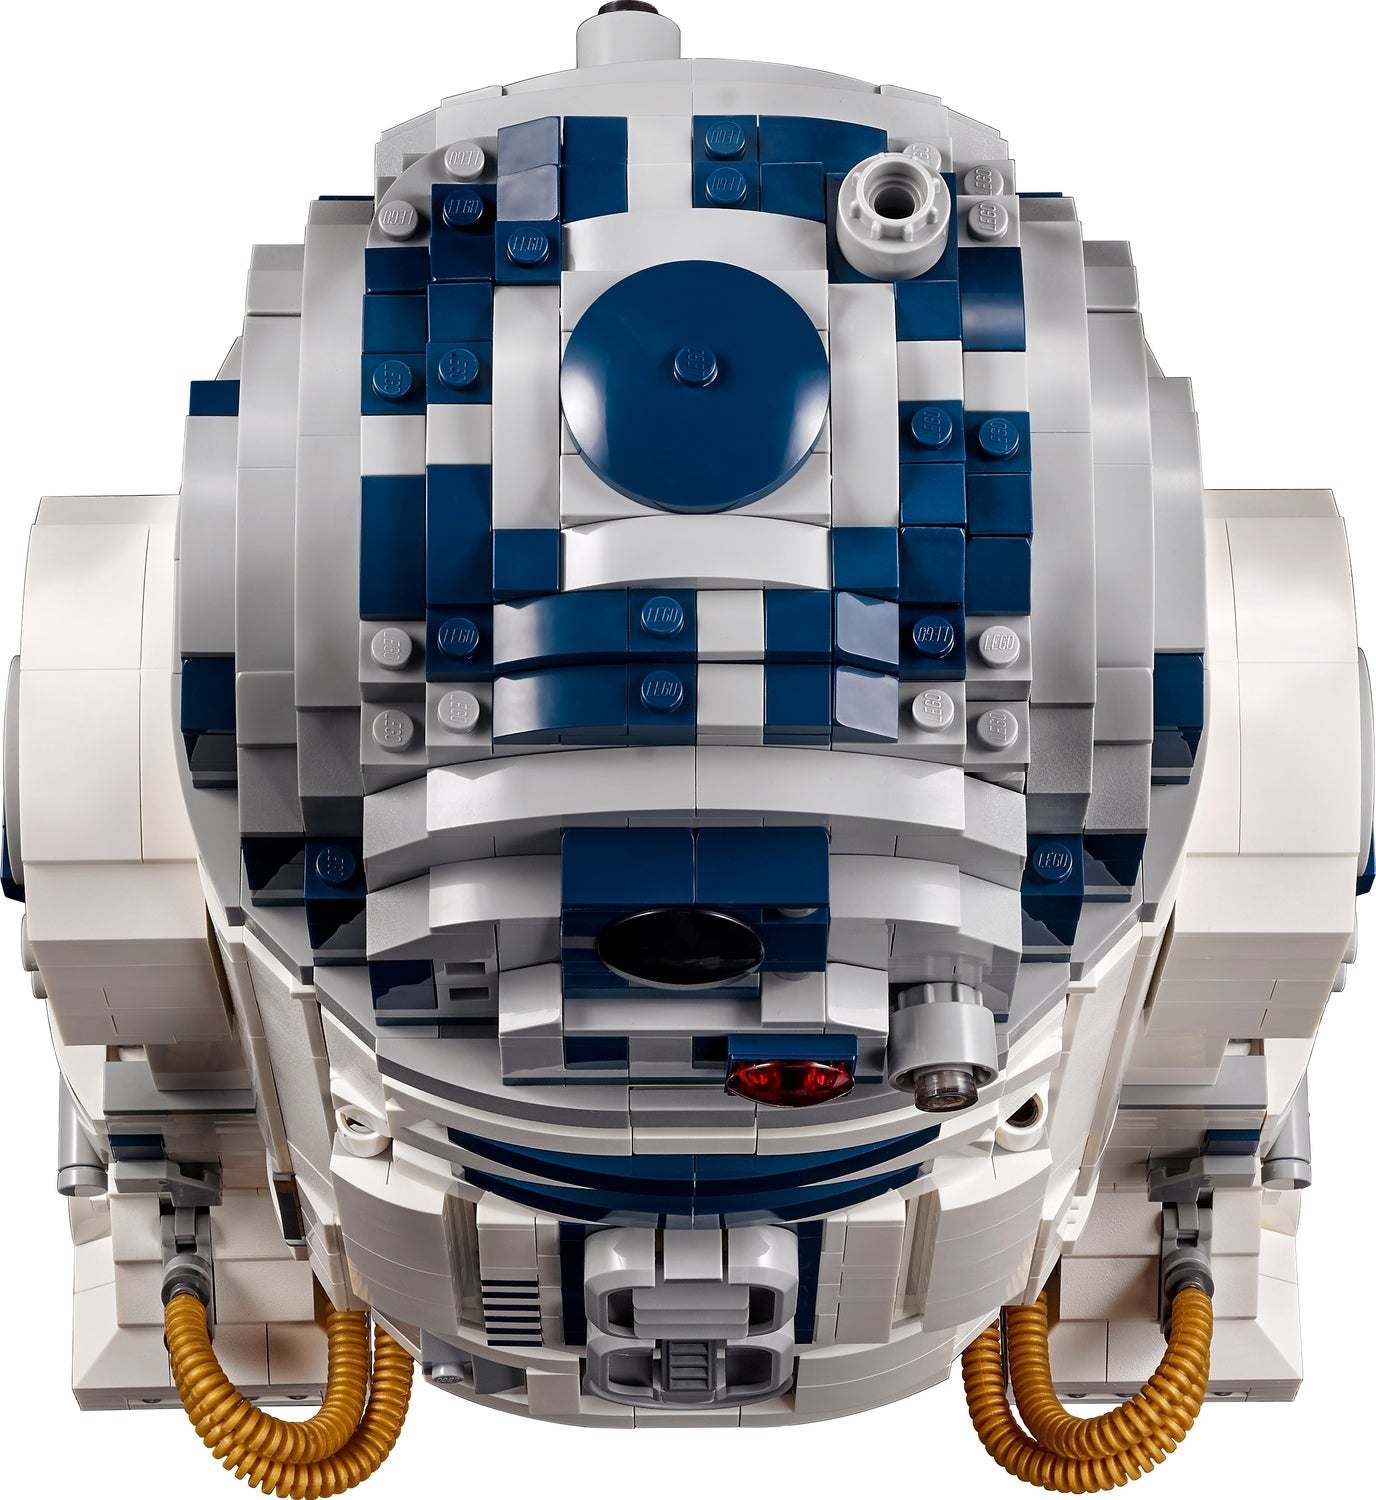 LEGO® Star Wars: R2-D2